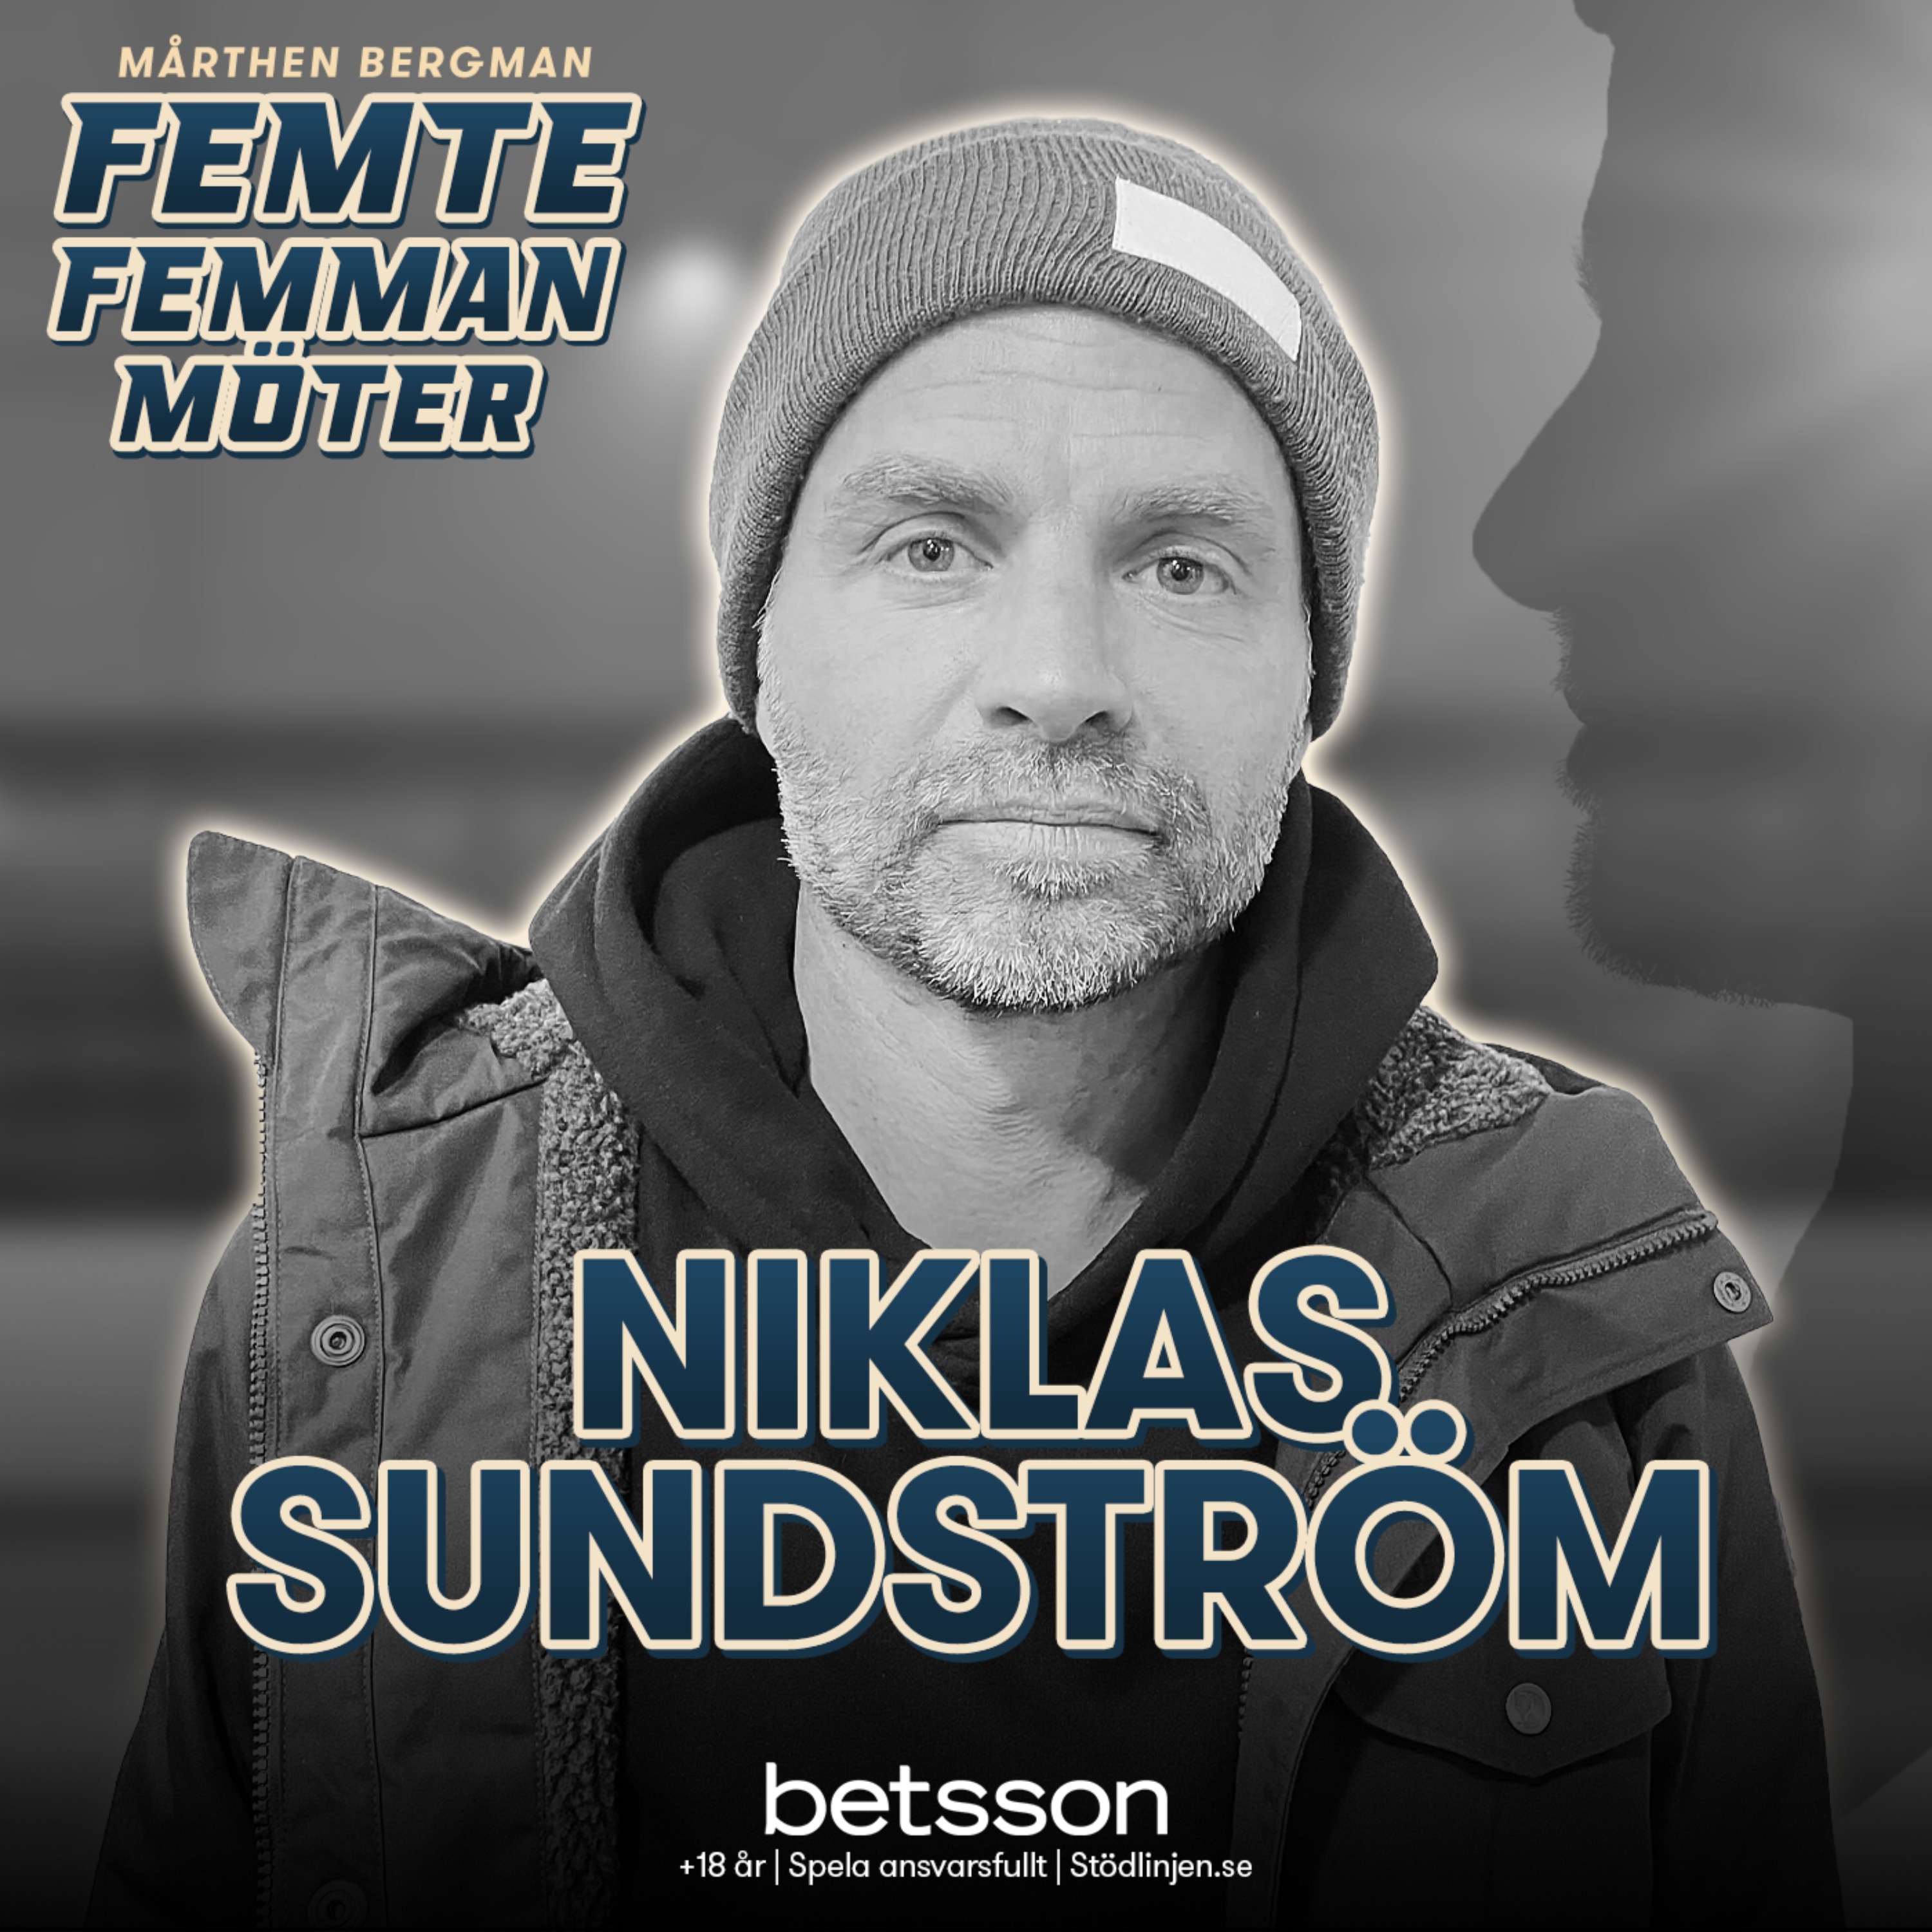 Möter: Niklas Sundström